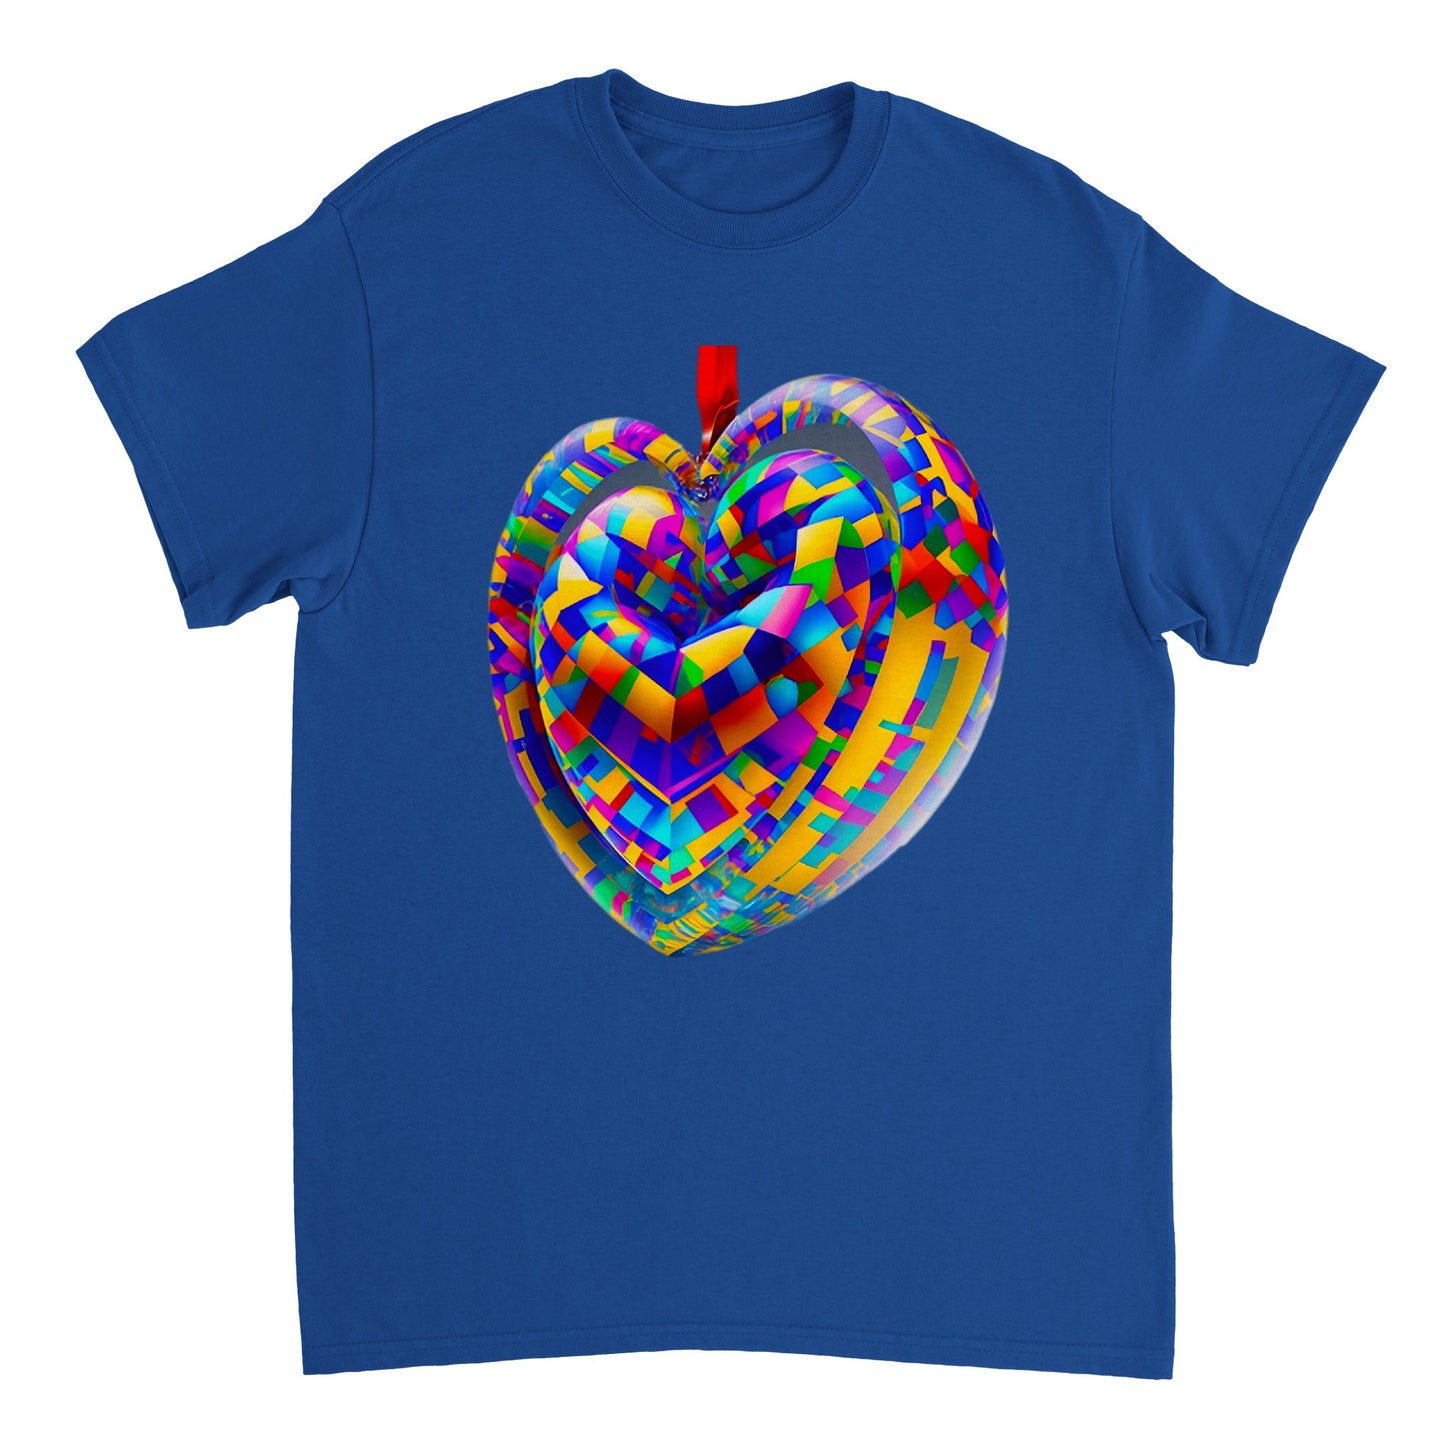 Love Heart - Heavyweight Unisex Crewneck T-shirt 80